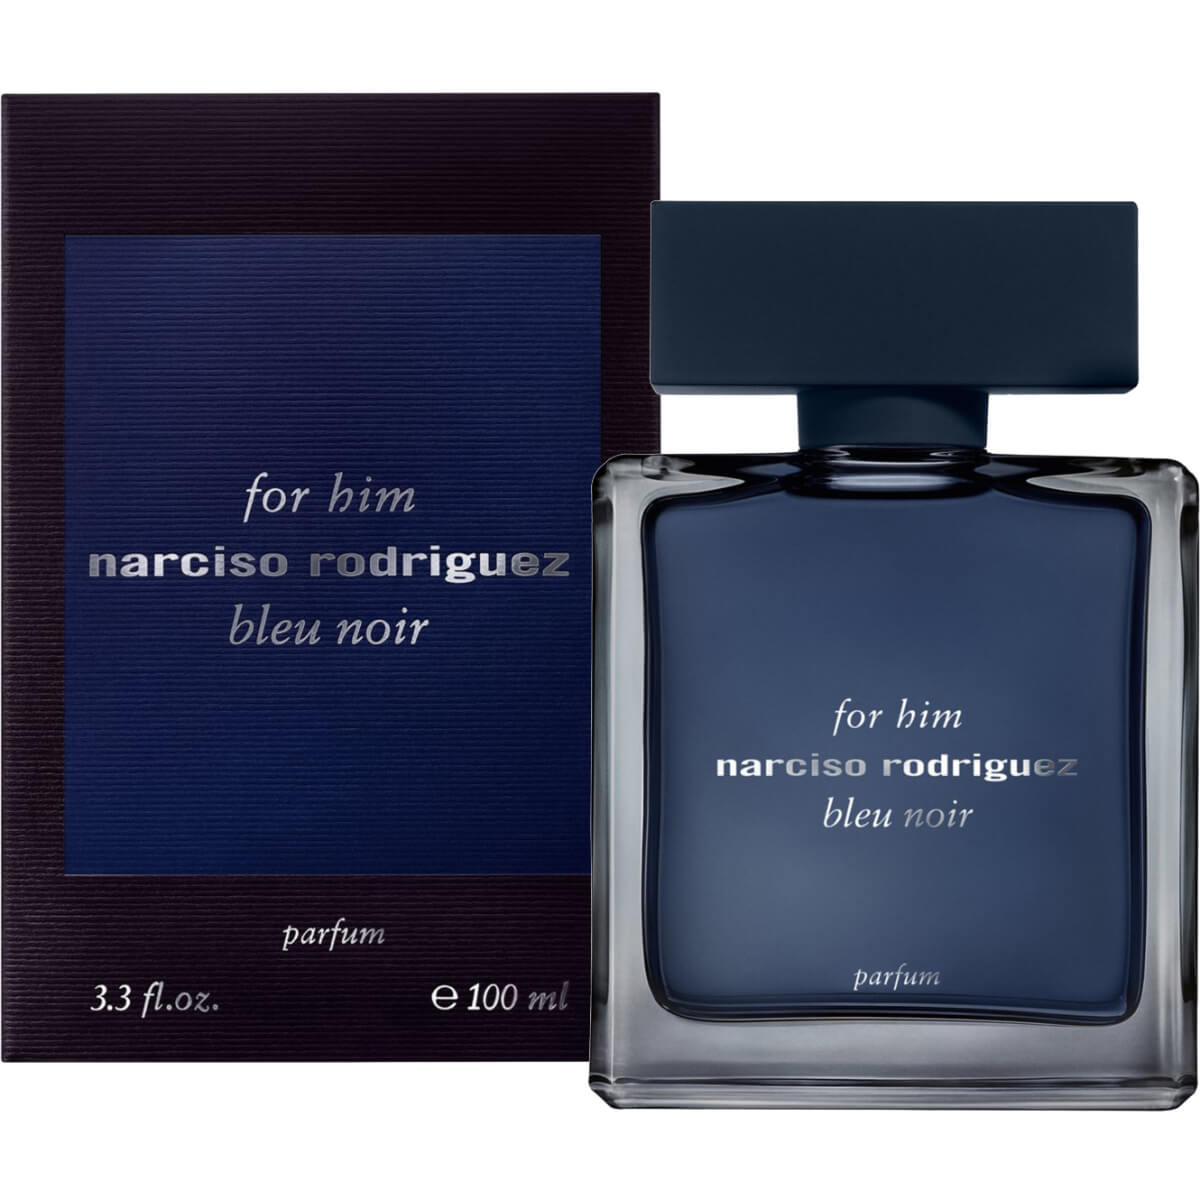 NARCISO RODRIGUEZ - Narciso Rodriguez for Him Bleu Noir - Eau de Parf